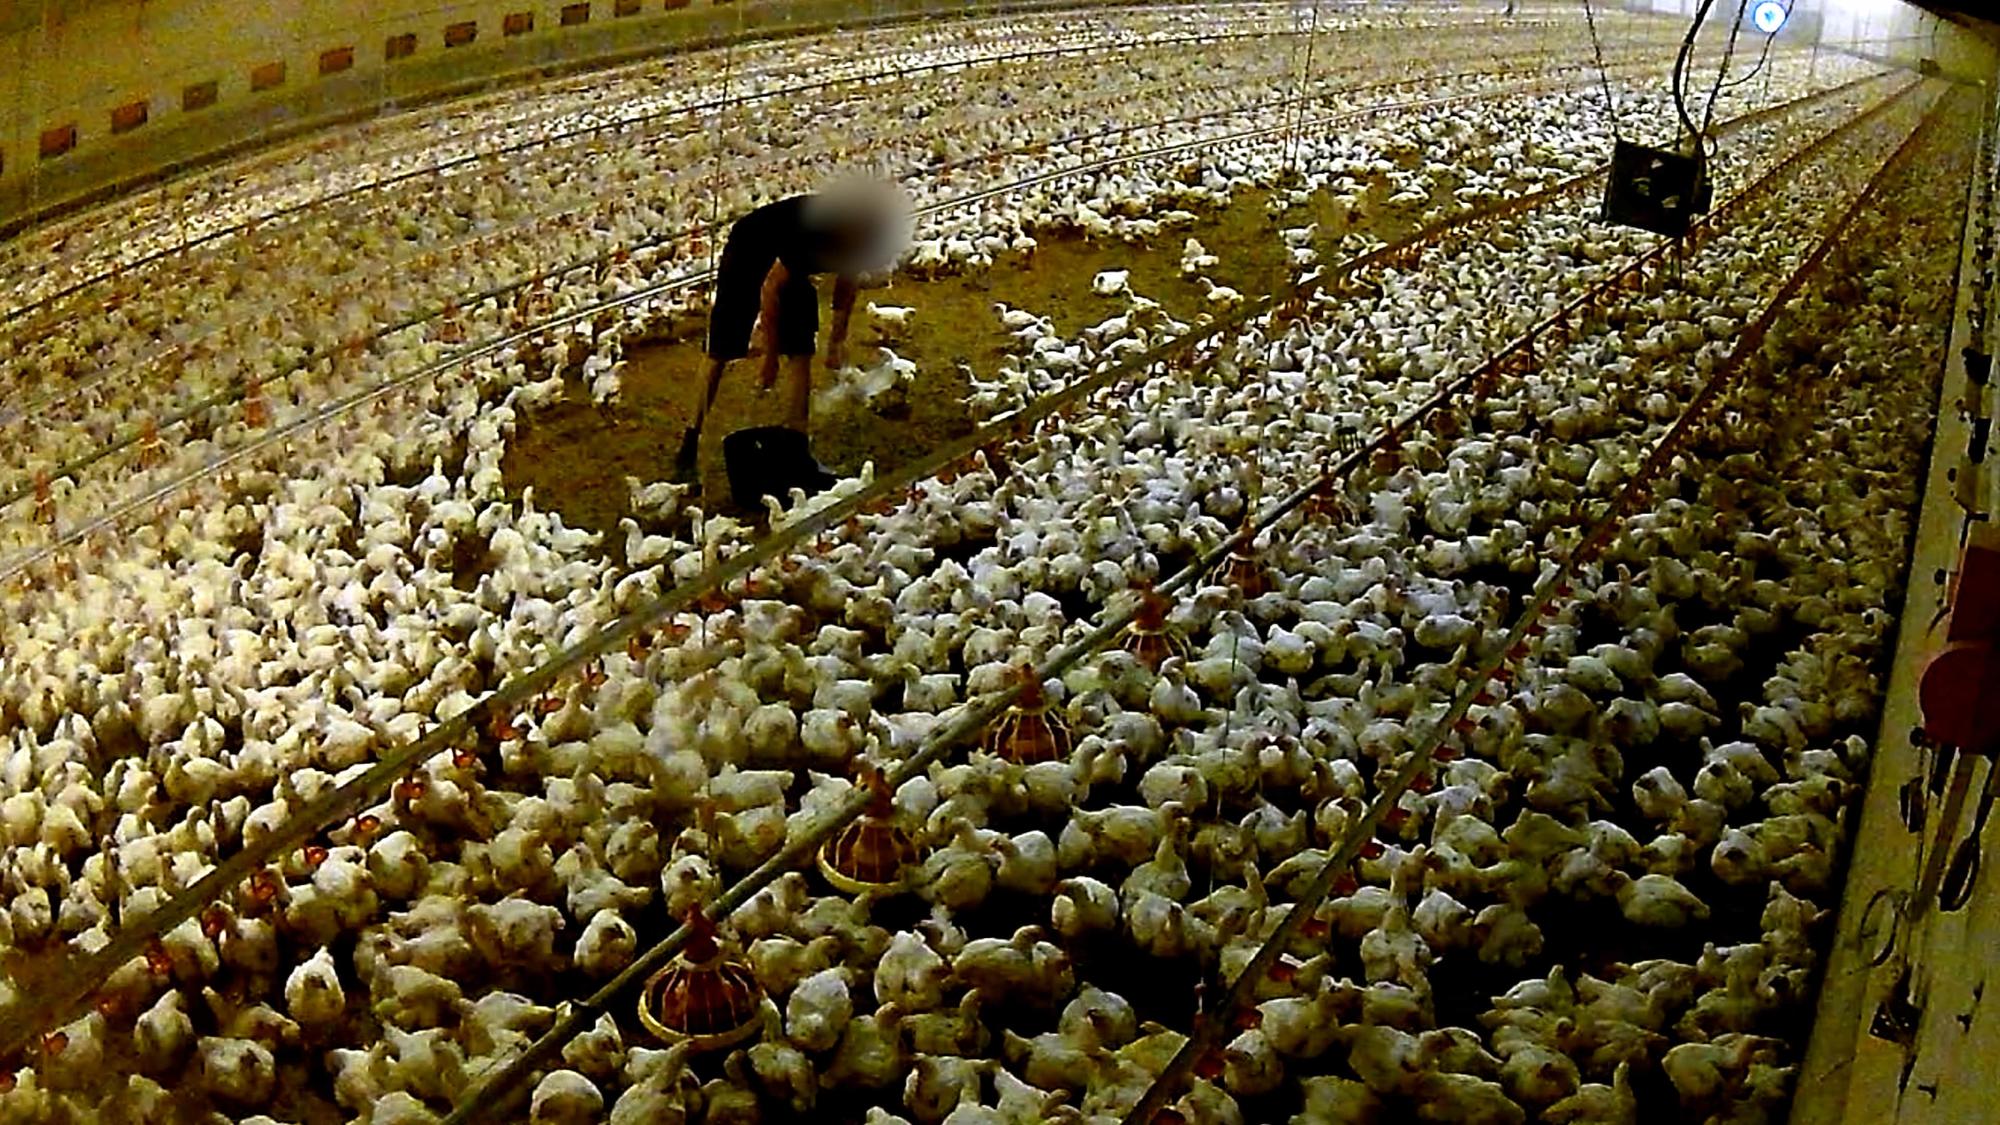 Investigación de Equalia sobre maltrato animal en granjas avícolas alemanas vinculadas a Lidl - 4